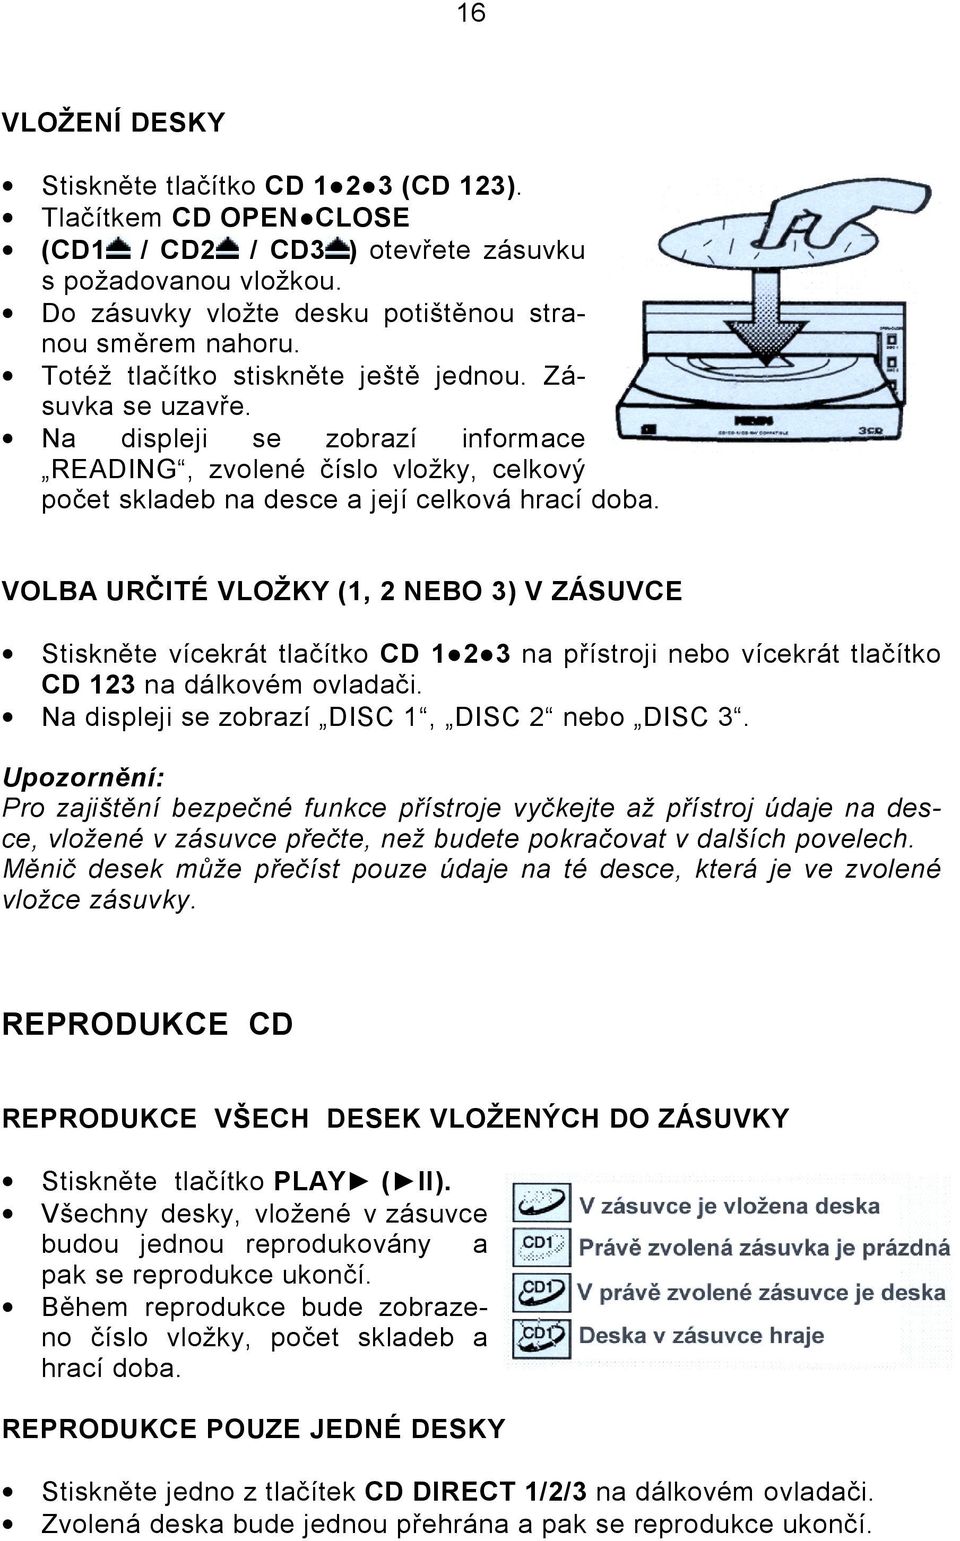 VOLBA URČITÉ VLOŽKY (1, 2 NEBO 3) V ZÁSUVCE Stiskněte vícekrát tlačítko CD 1 2 3 na přístroji nebo vícekrát tlačítko CD 123 na dálkovém ovladači. Na displeji se zobrazí DISC 1, DISC 2 nebo DISC 3.